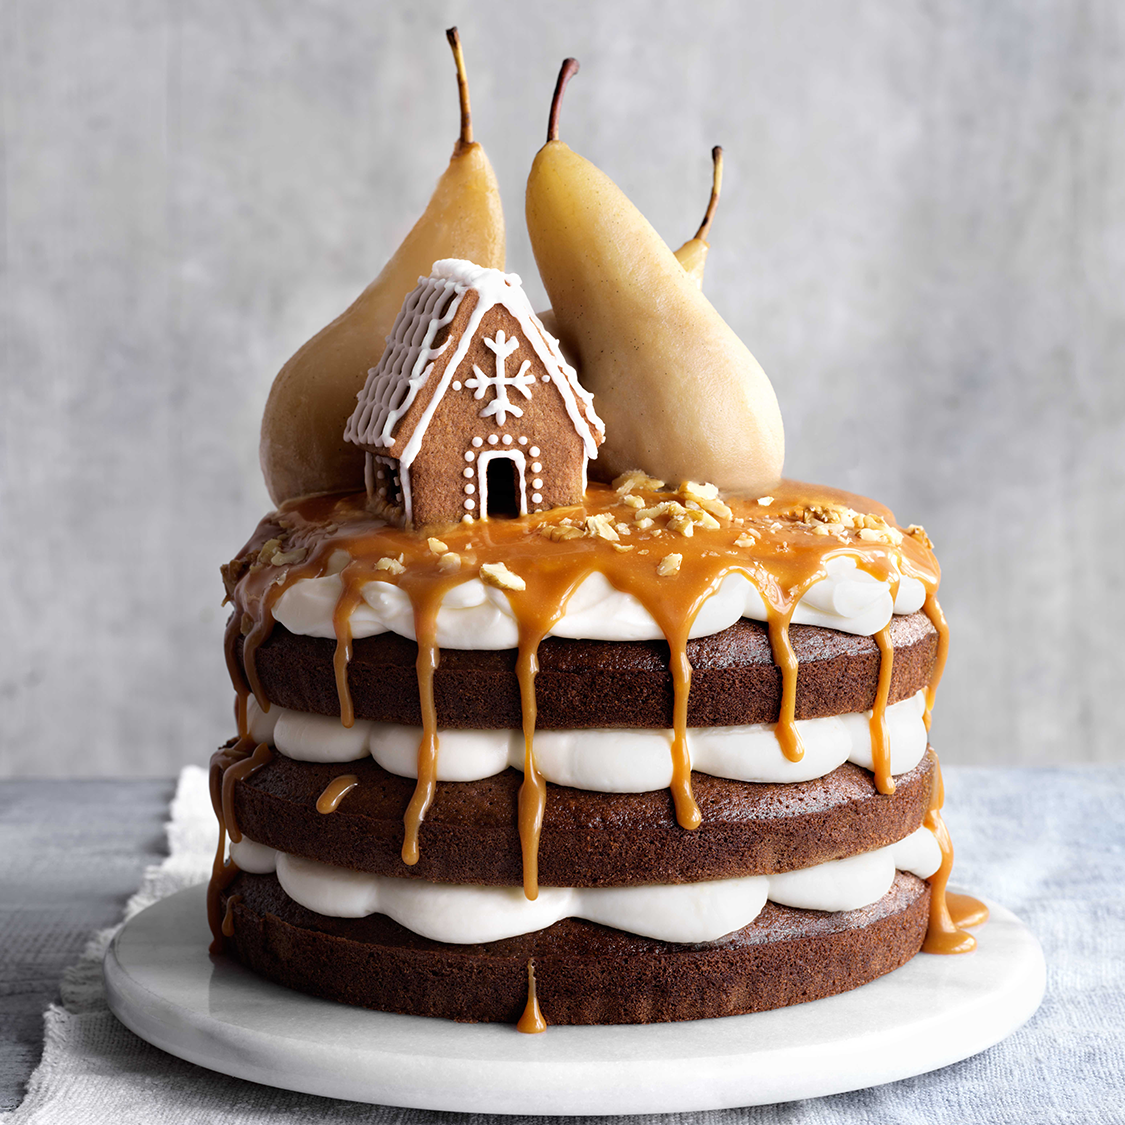 Share more than 138 british ginger cake best - kidsdream.edu.vn